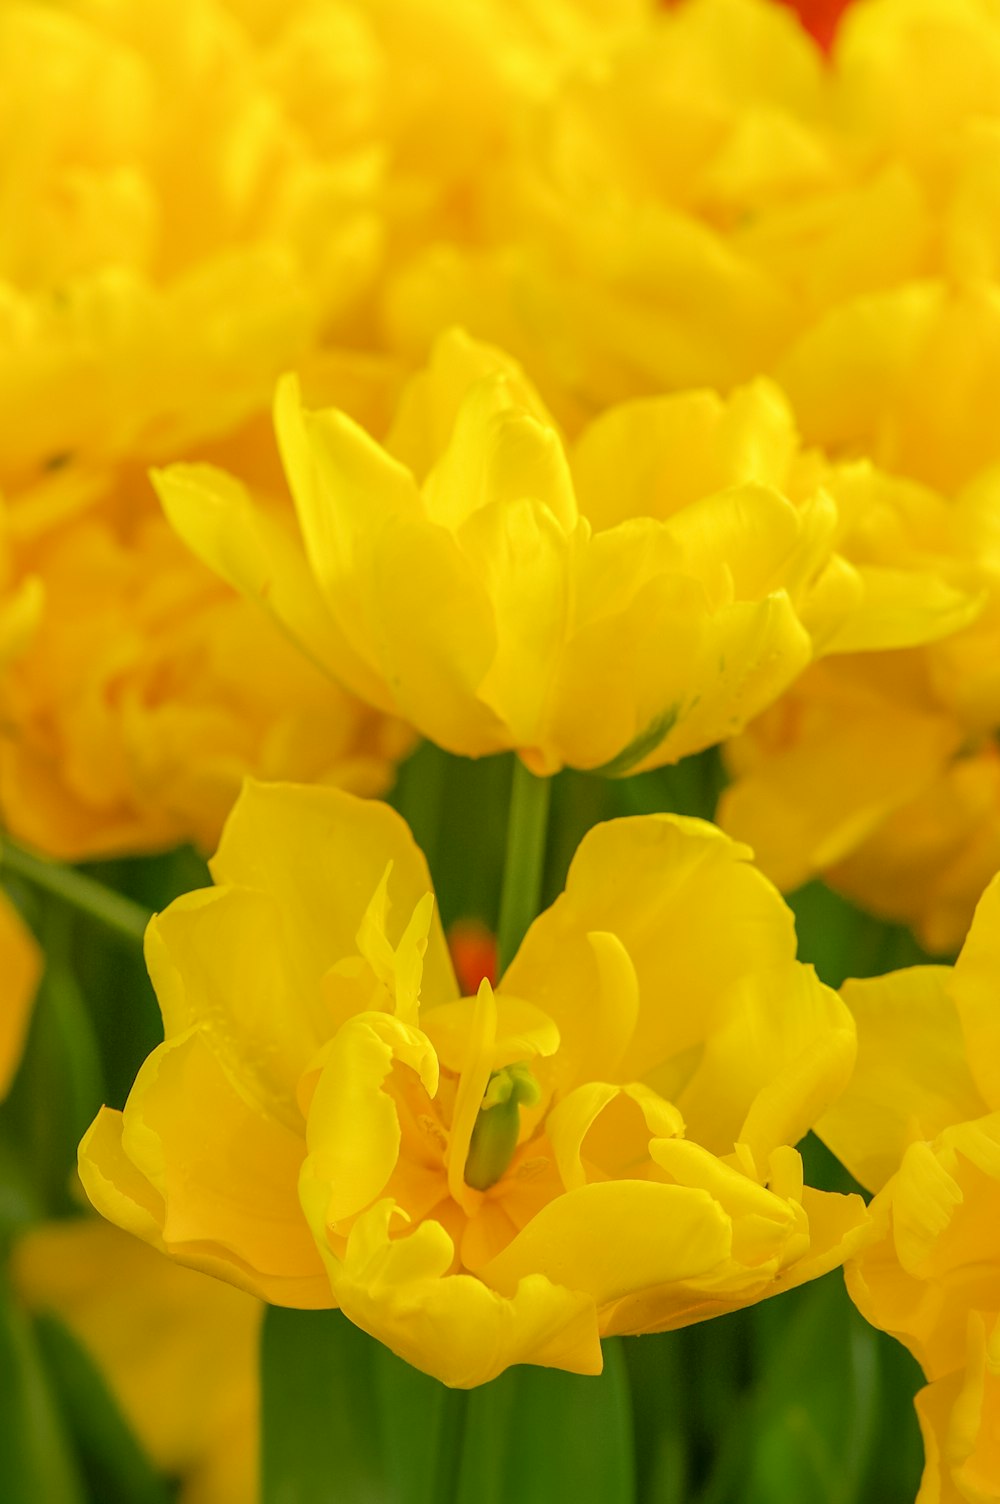 fiore giallo in macro shot